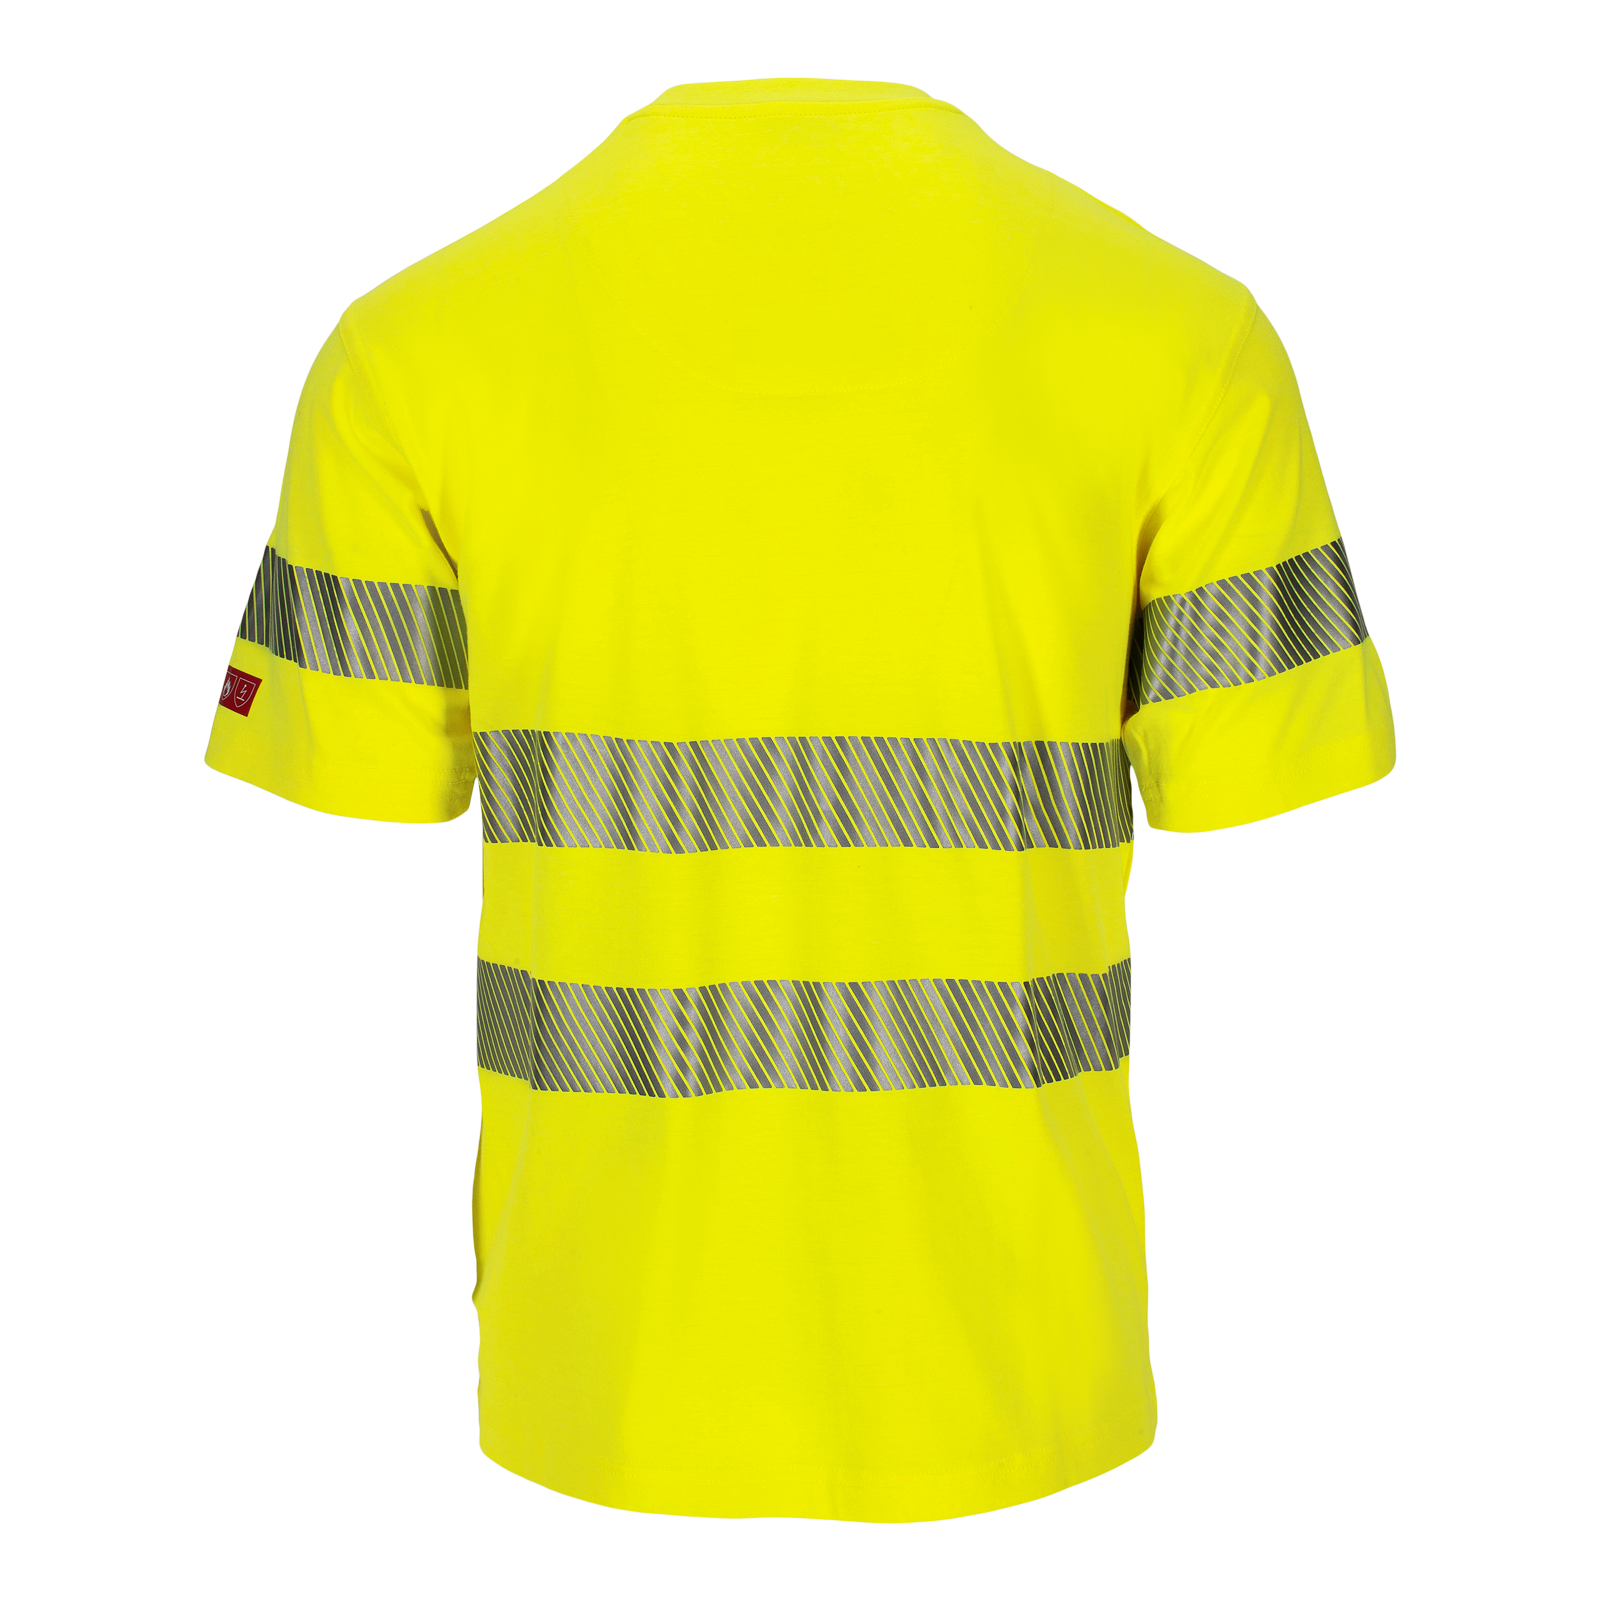 El-line multinorm t-skjorte, klasse 2 (947612)